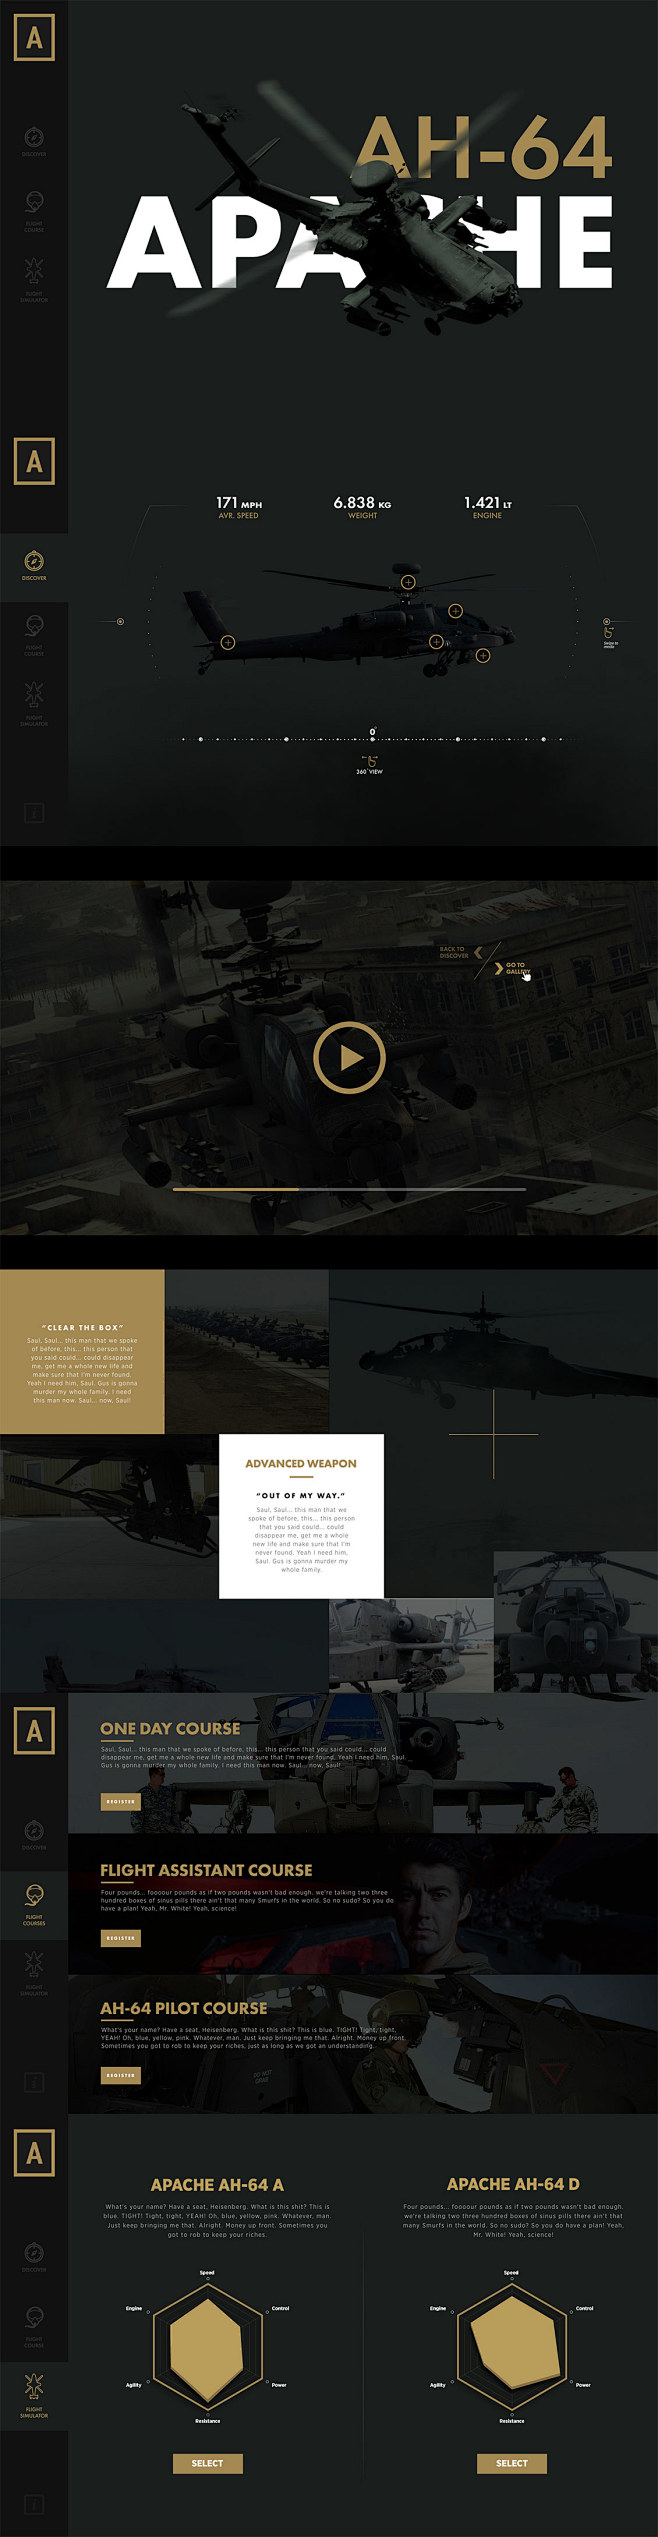 AH-64 APACHE  “小董视觉转...